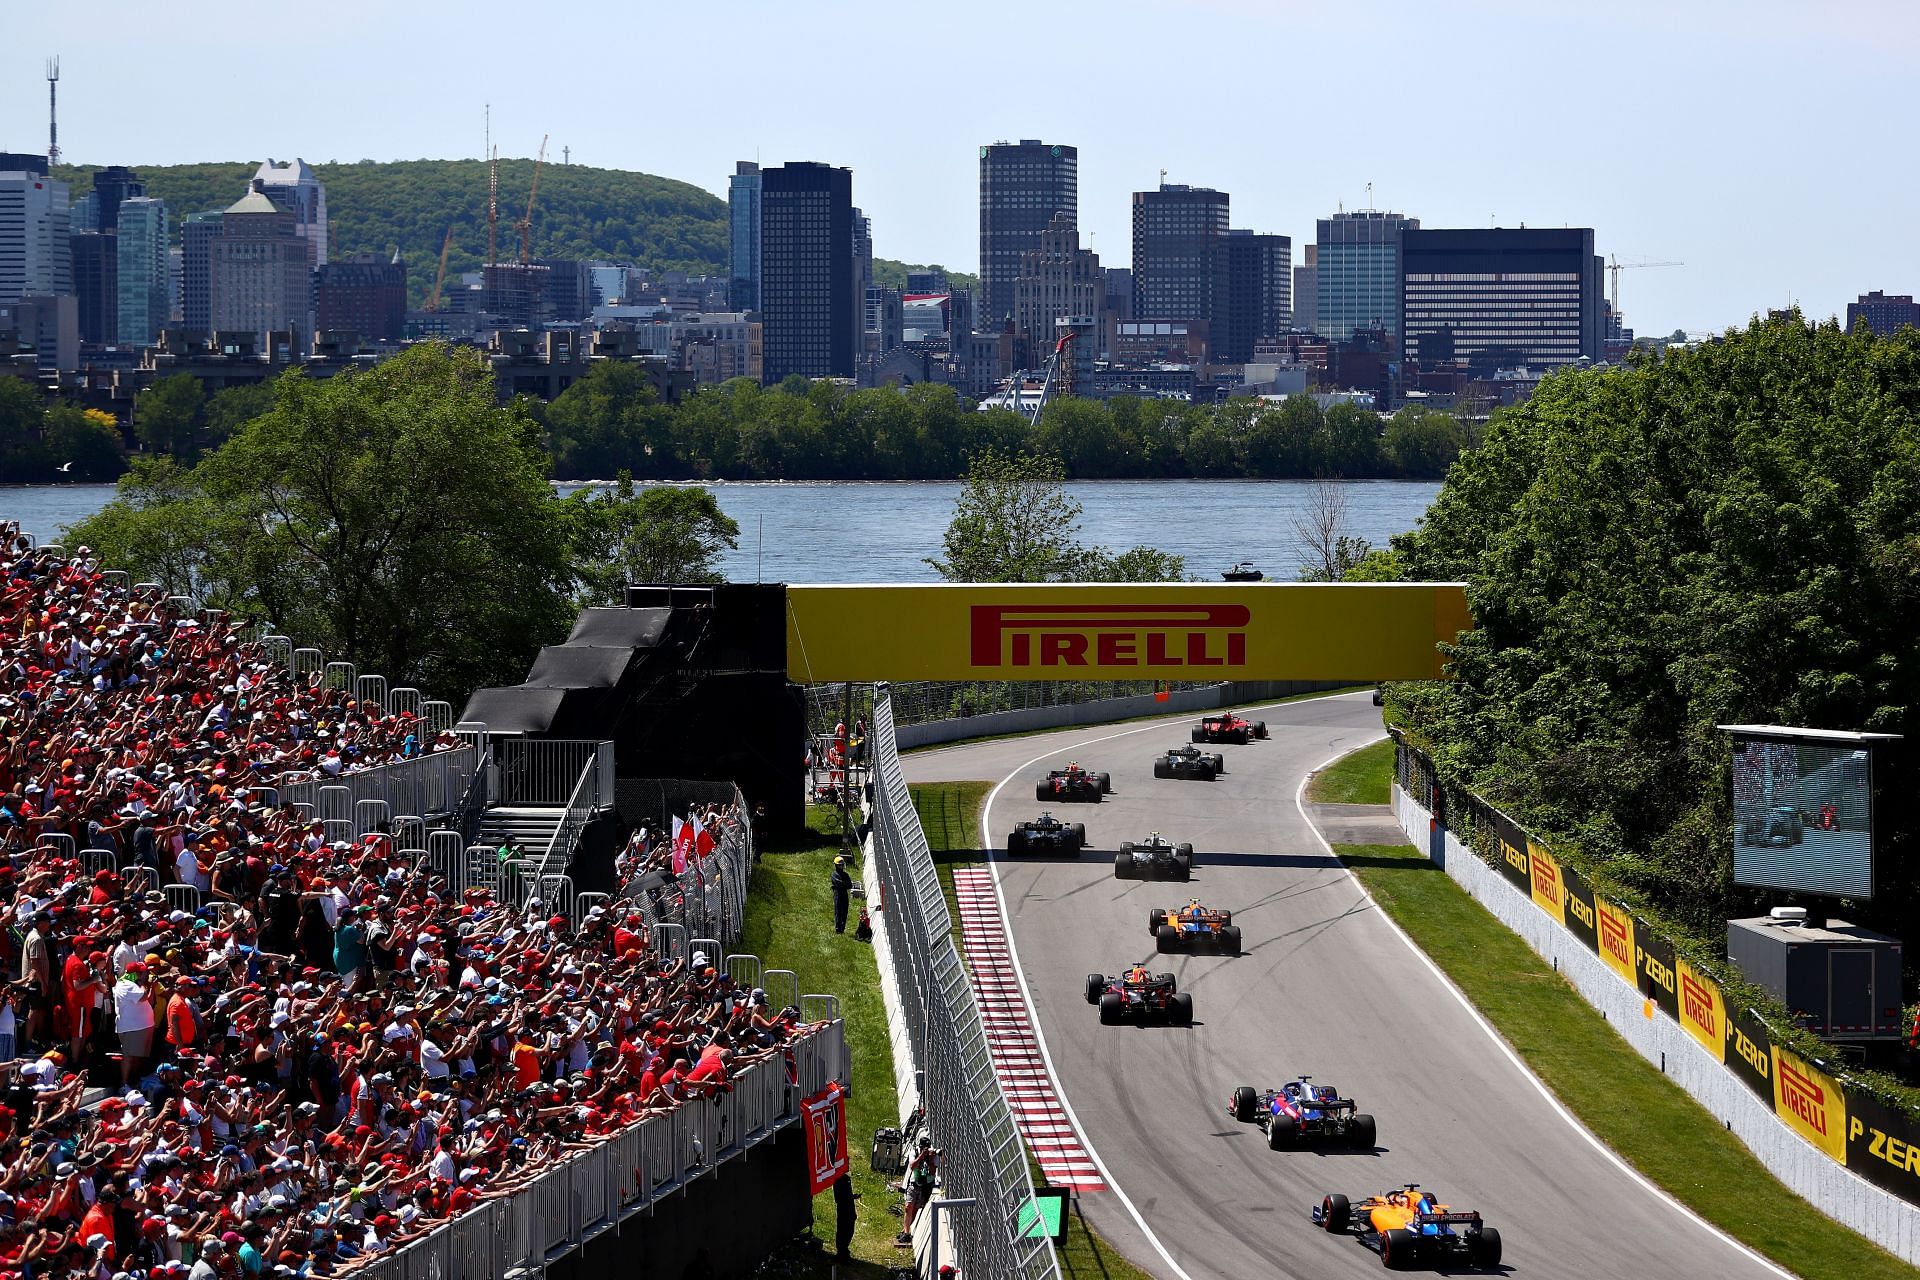 F1 Grand Prix of Canada